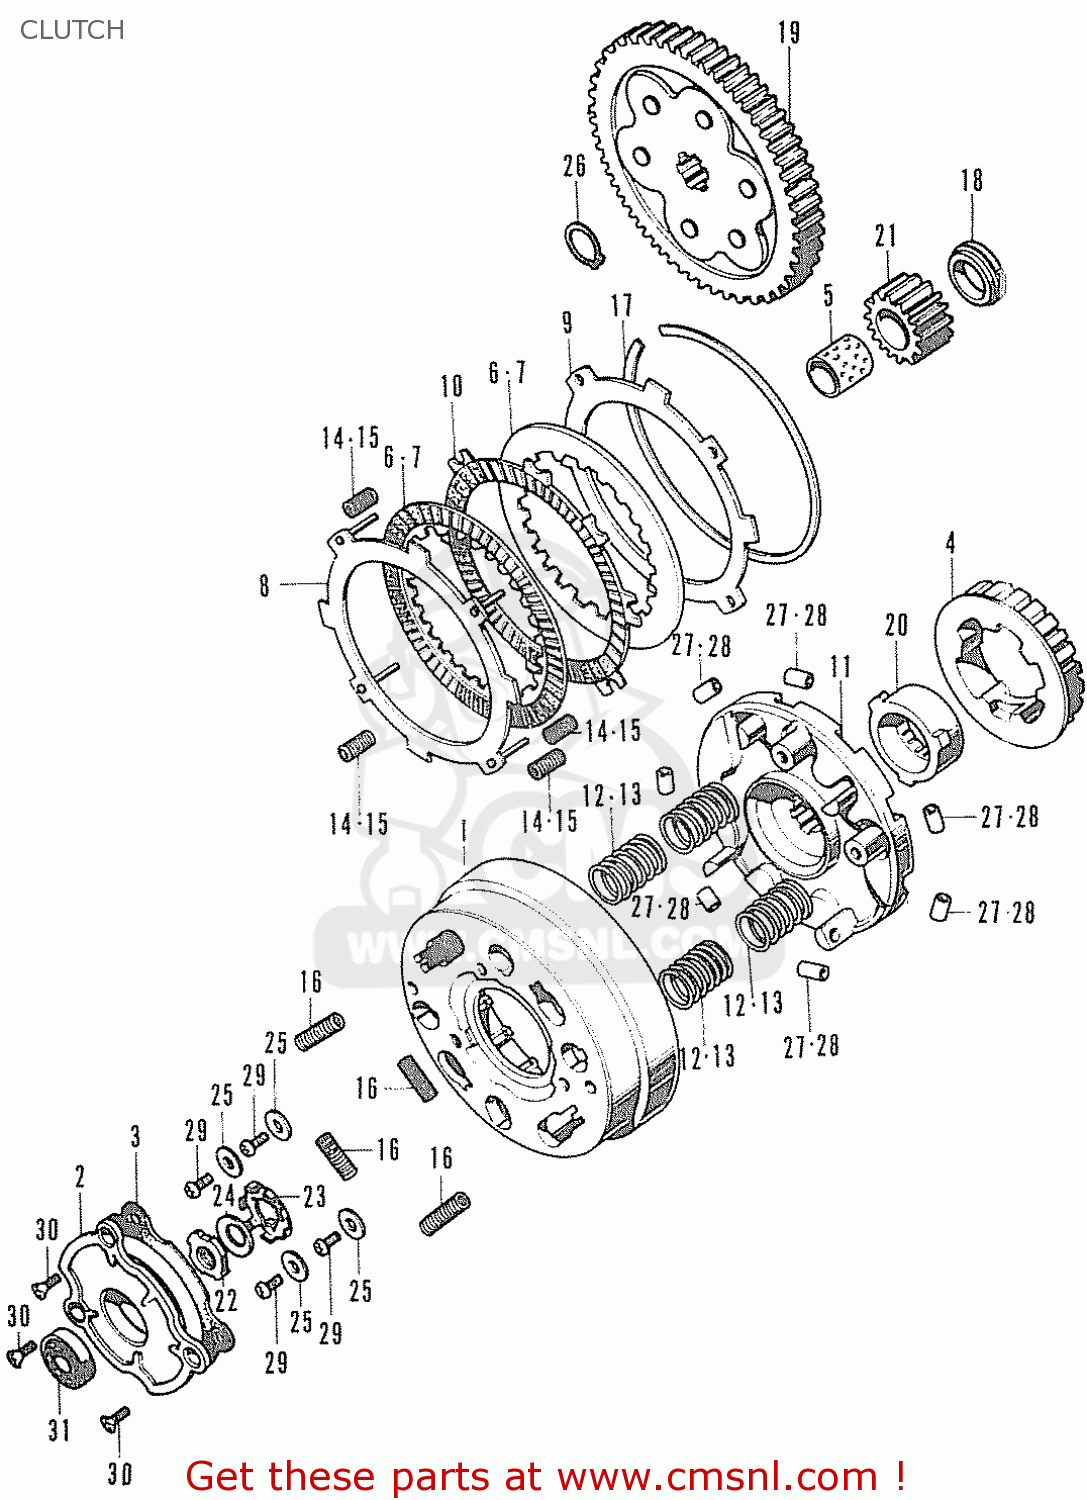 Honda chaly tuning parts